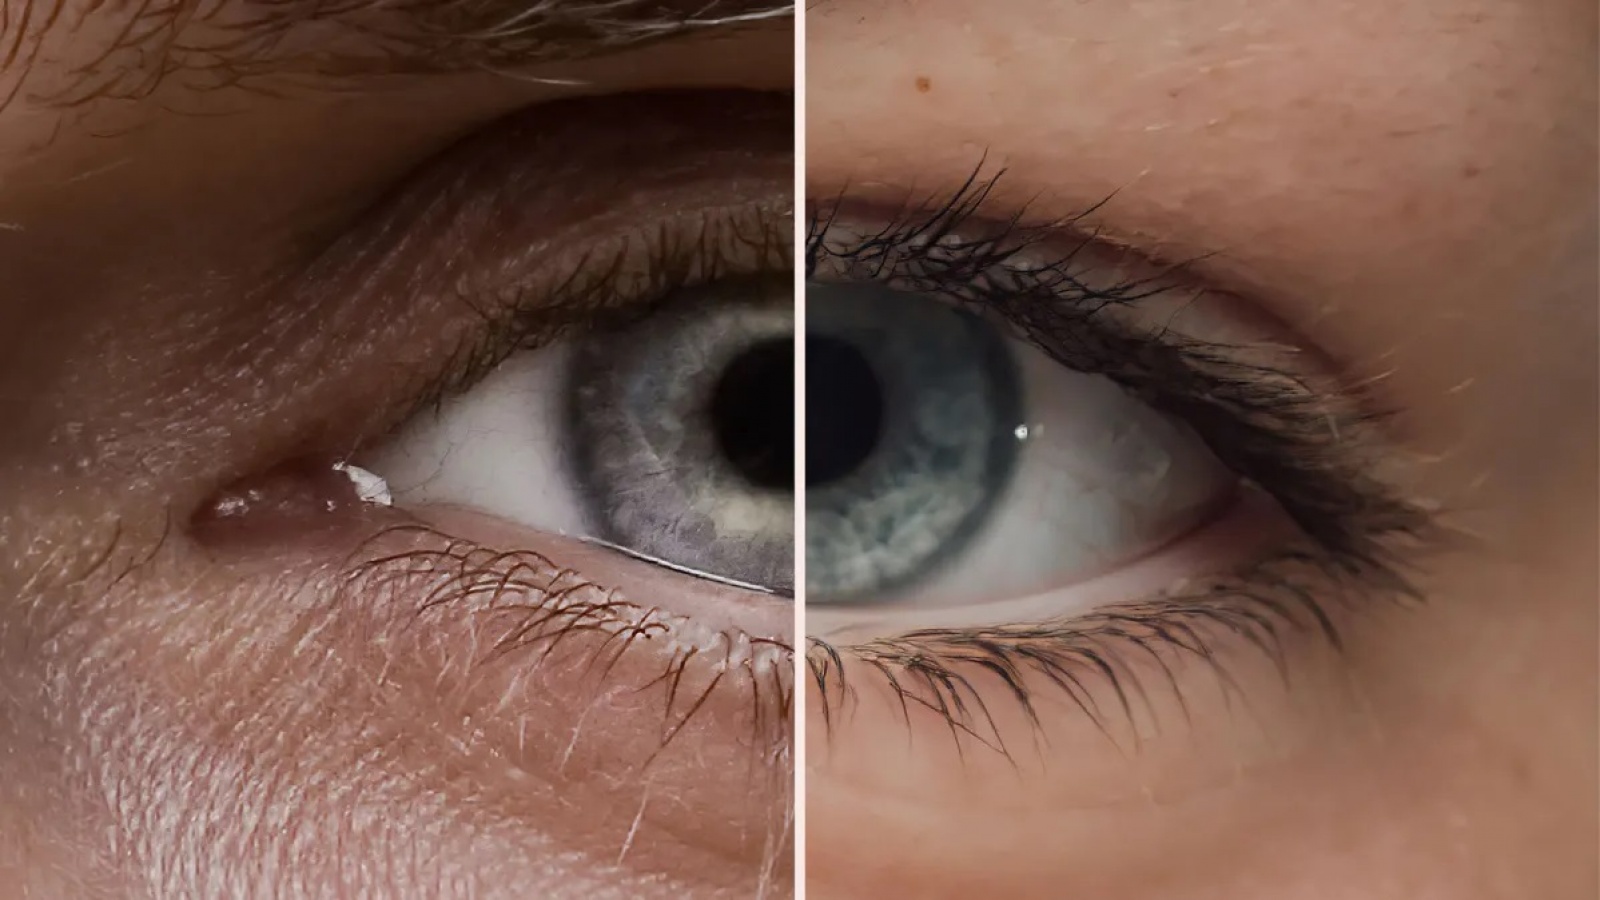 rus: Два ока різних людей, співставлені разом в одне, з паралельною білою розділовою лінією посередині. 